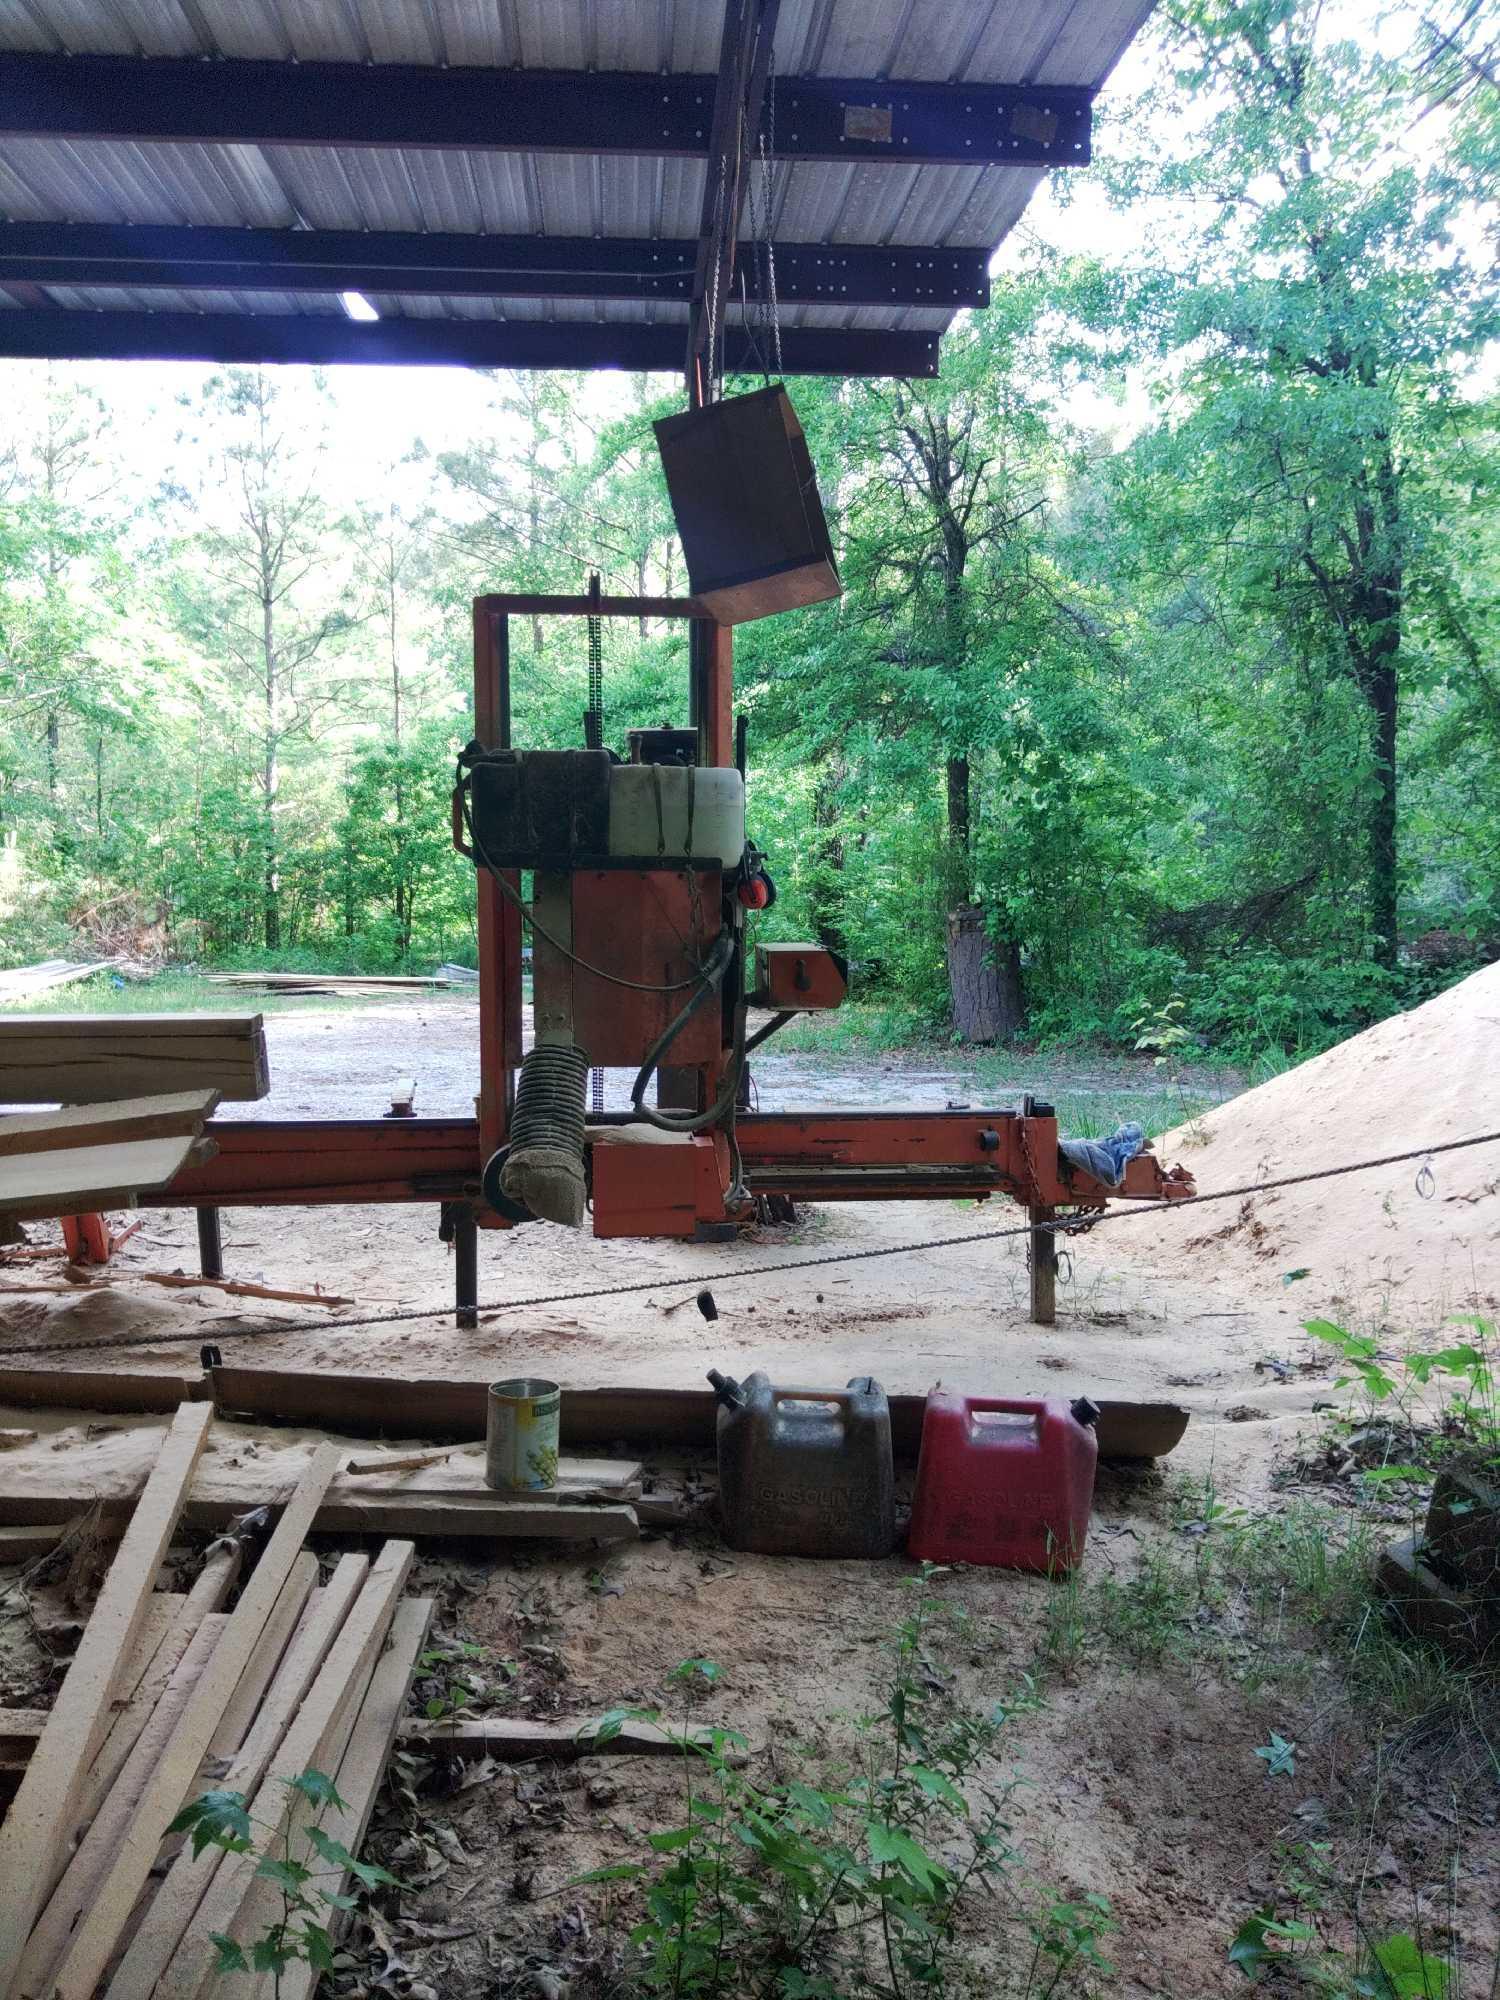 Wood-Mizer LT1040HD sawmill